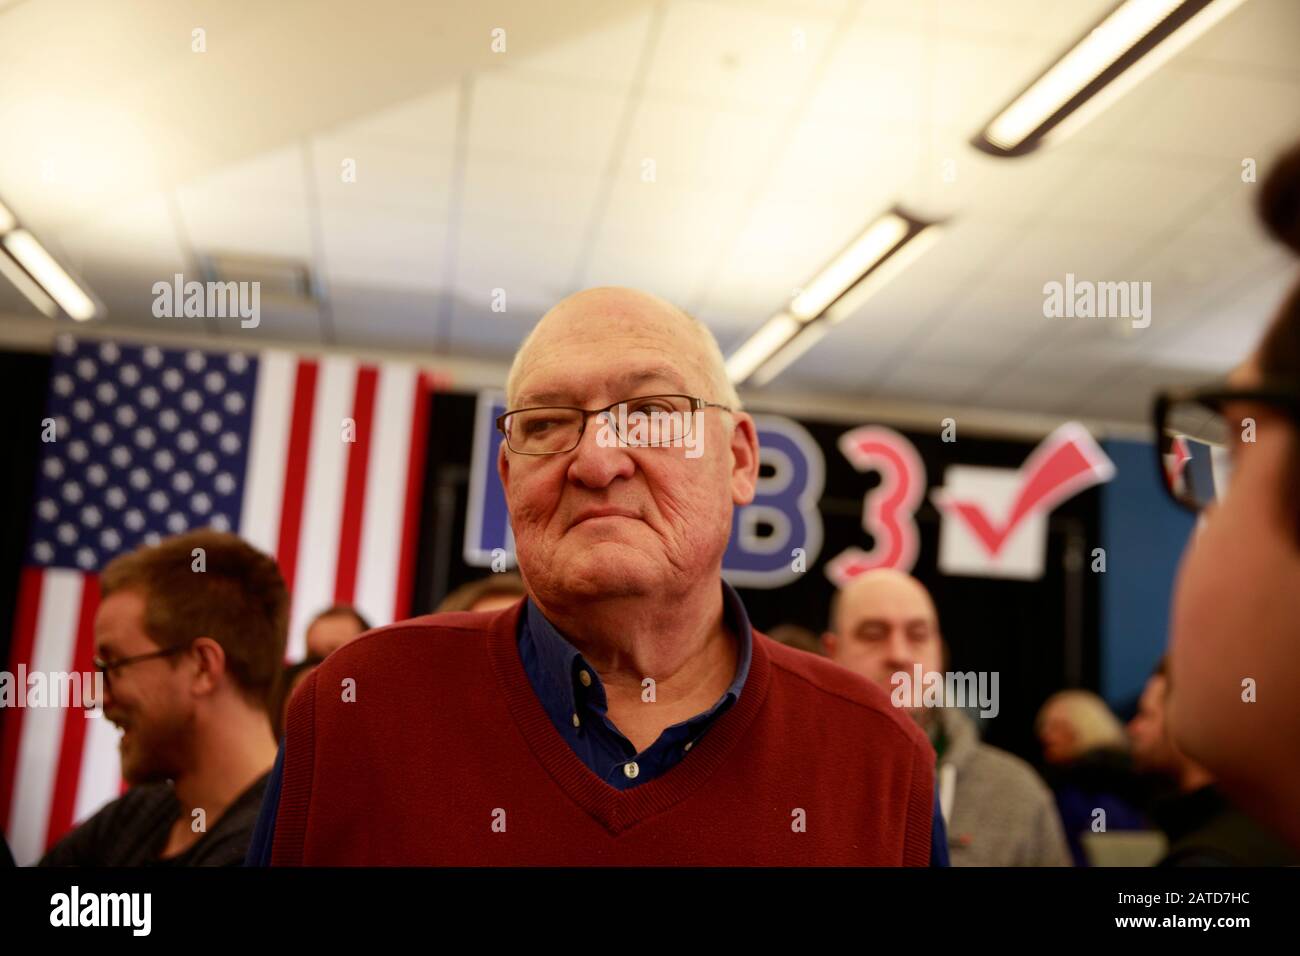 02012020 - North Liberty, Iowa, USA: Ein Anhänger wartet darauf, den demokratischen Präsidentschaftskandidaten Joe Biden die Hand zu schütteln, nachdem Biden während einer Wahlkampfveranstaltung in Iowa Caucus am Samstag, 1. Februar 2020 in North Liberty, Iowa, gekämpft hatte. Stockfoto